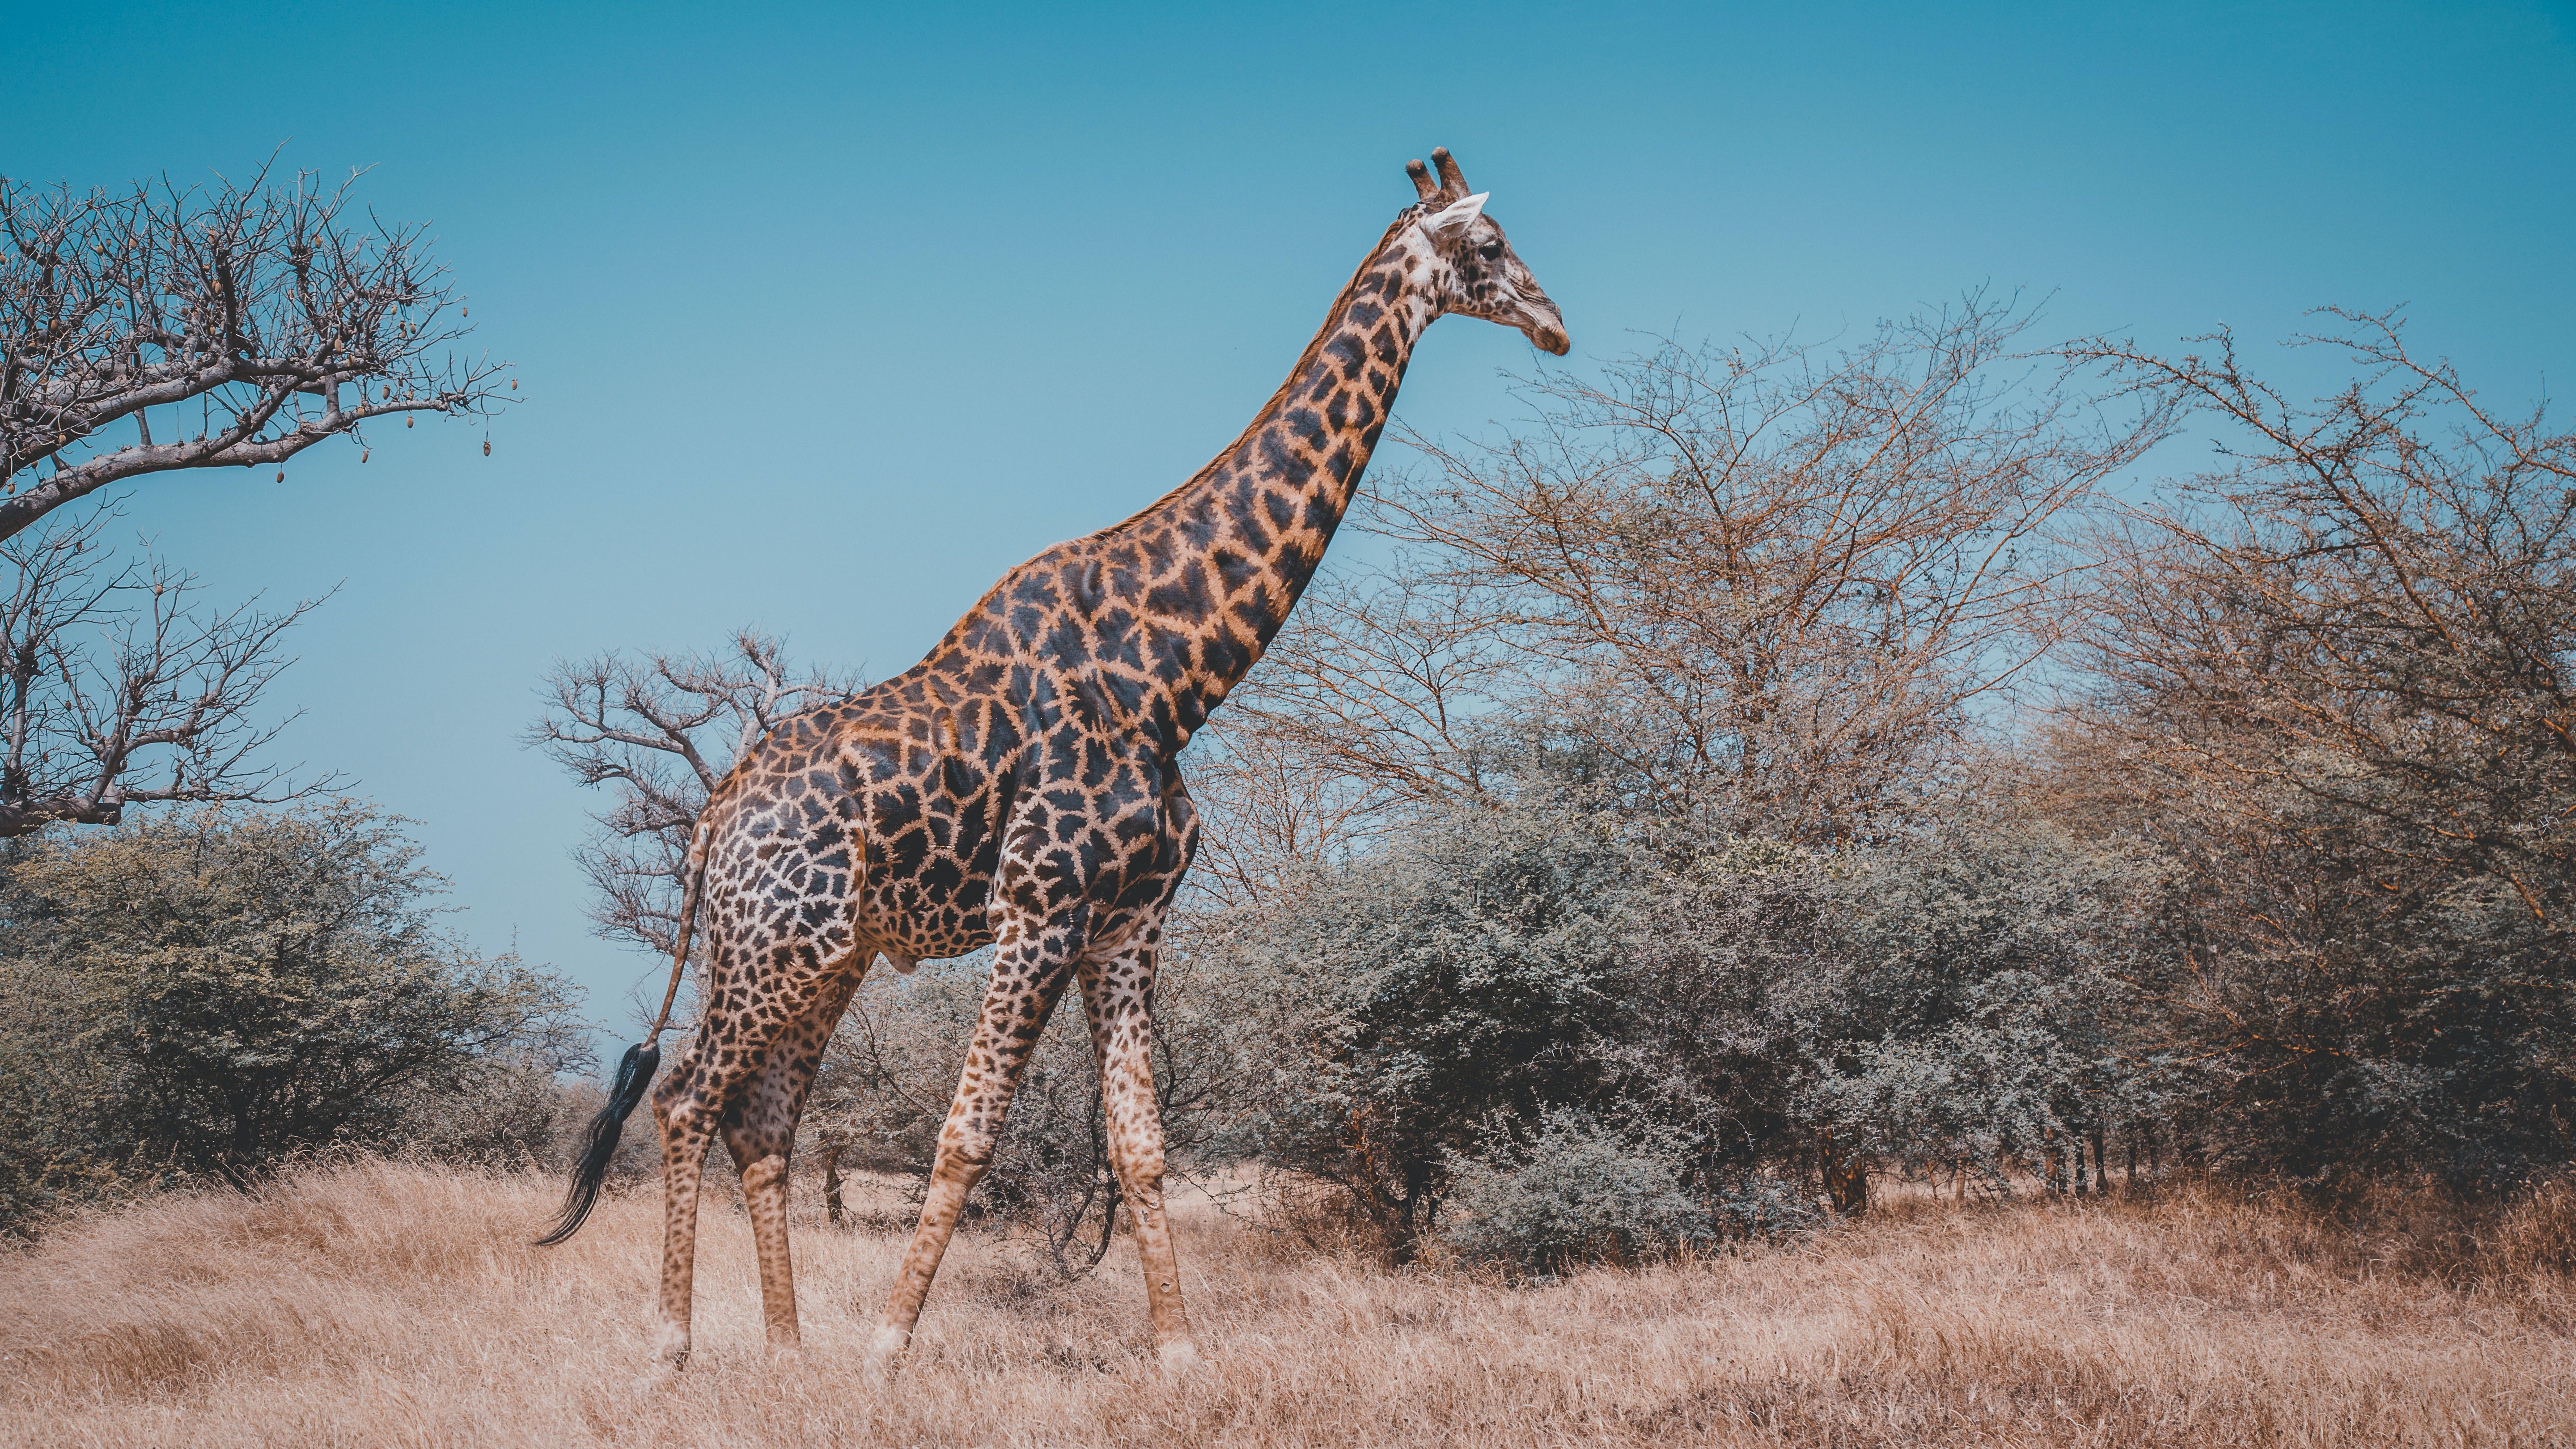 Giraffe roaming among the trees in Senegal Africa